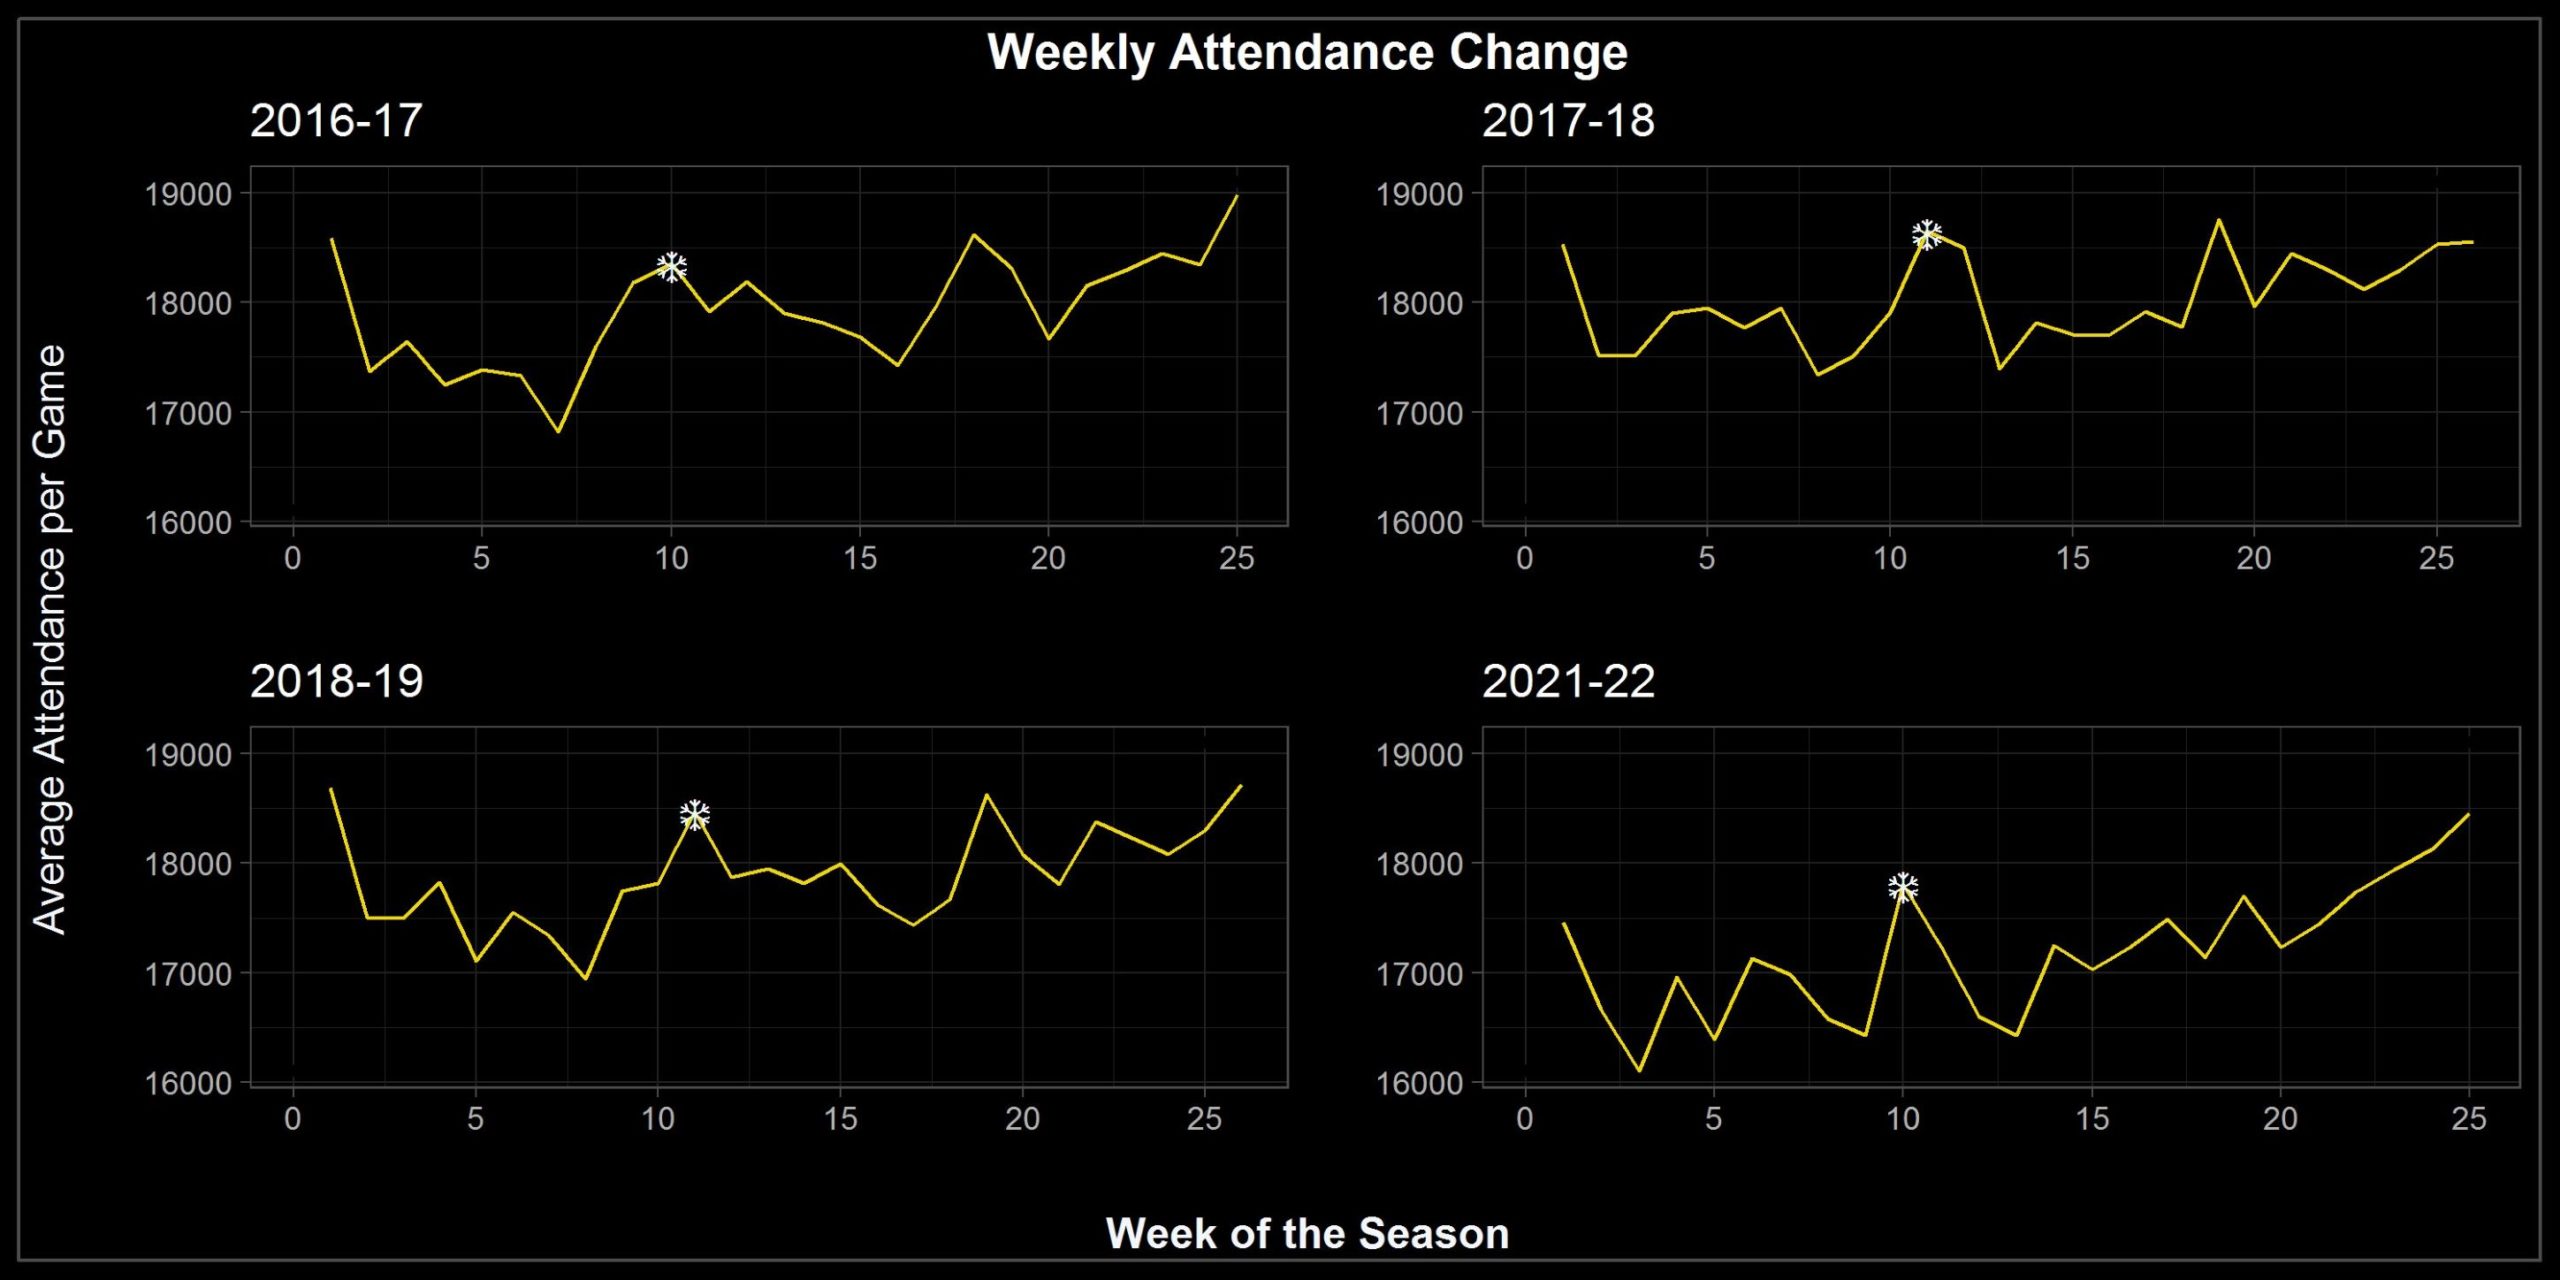 Liniendiagramm der wöchentlichen Entwicklung der Zuschauerzahlen in den Basketballhallen. Nach einem Höhepunkt zum Start der Saisons steigt die Zuschauerzahl tendenziell Richtung Ende der Saisons.